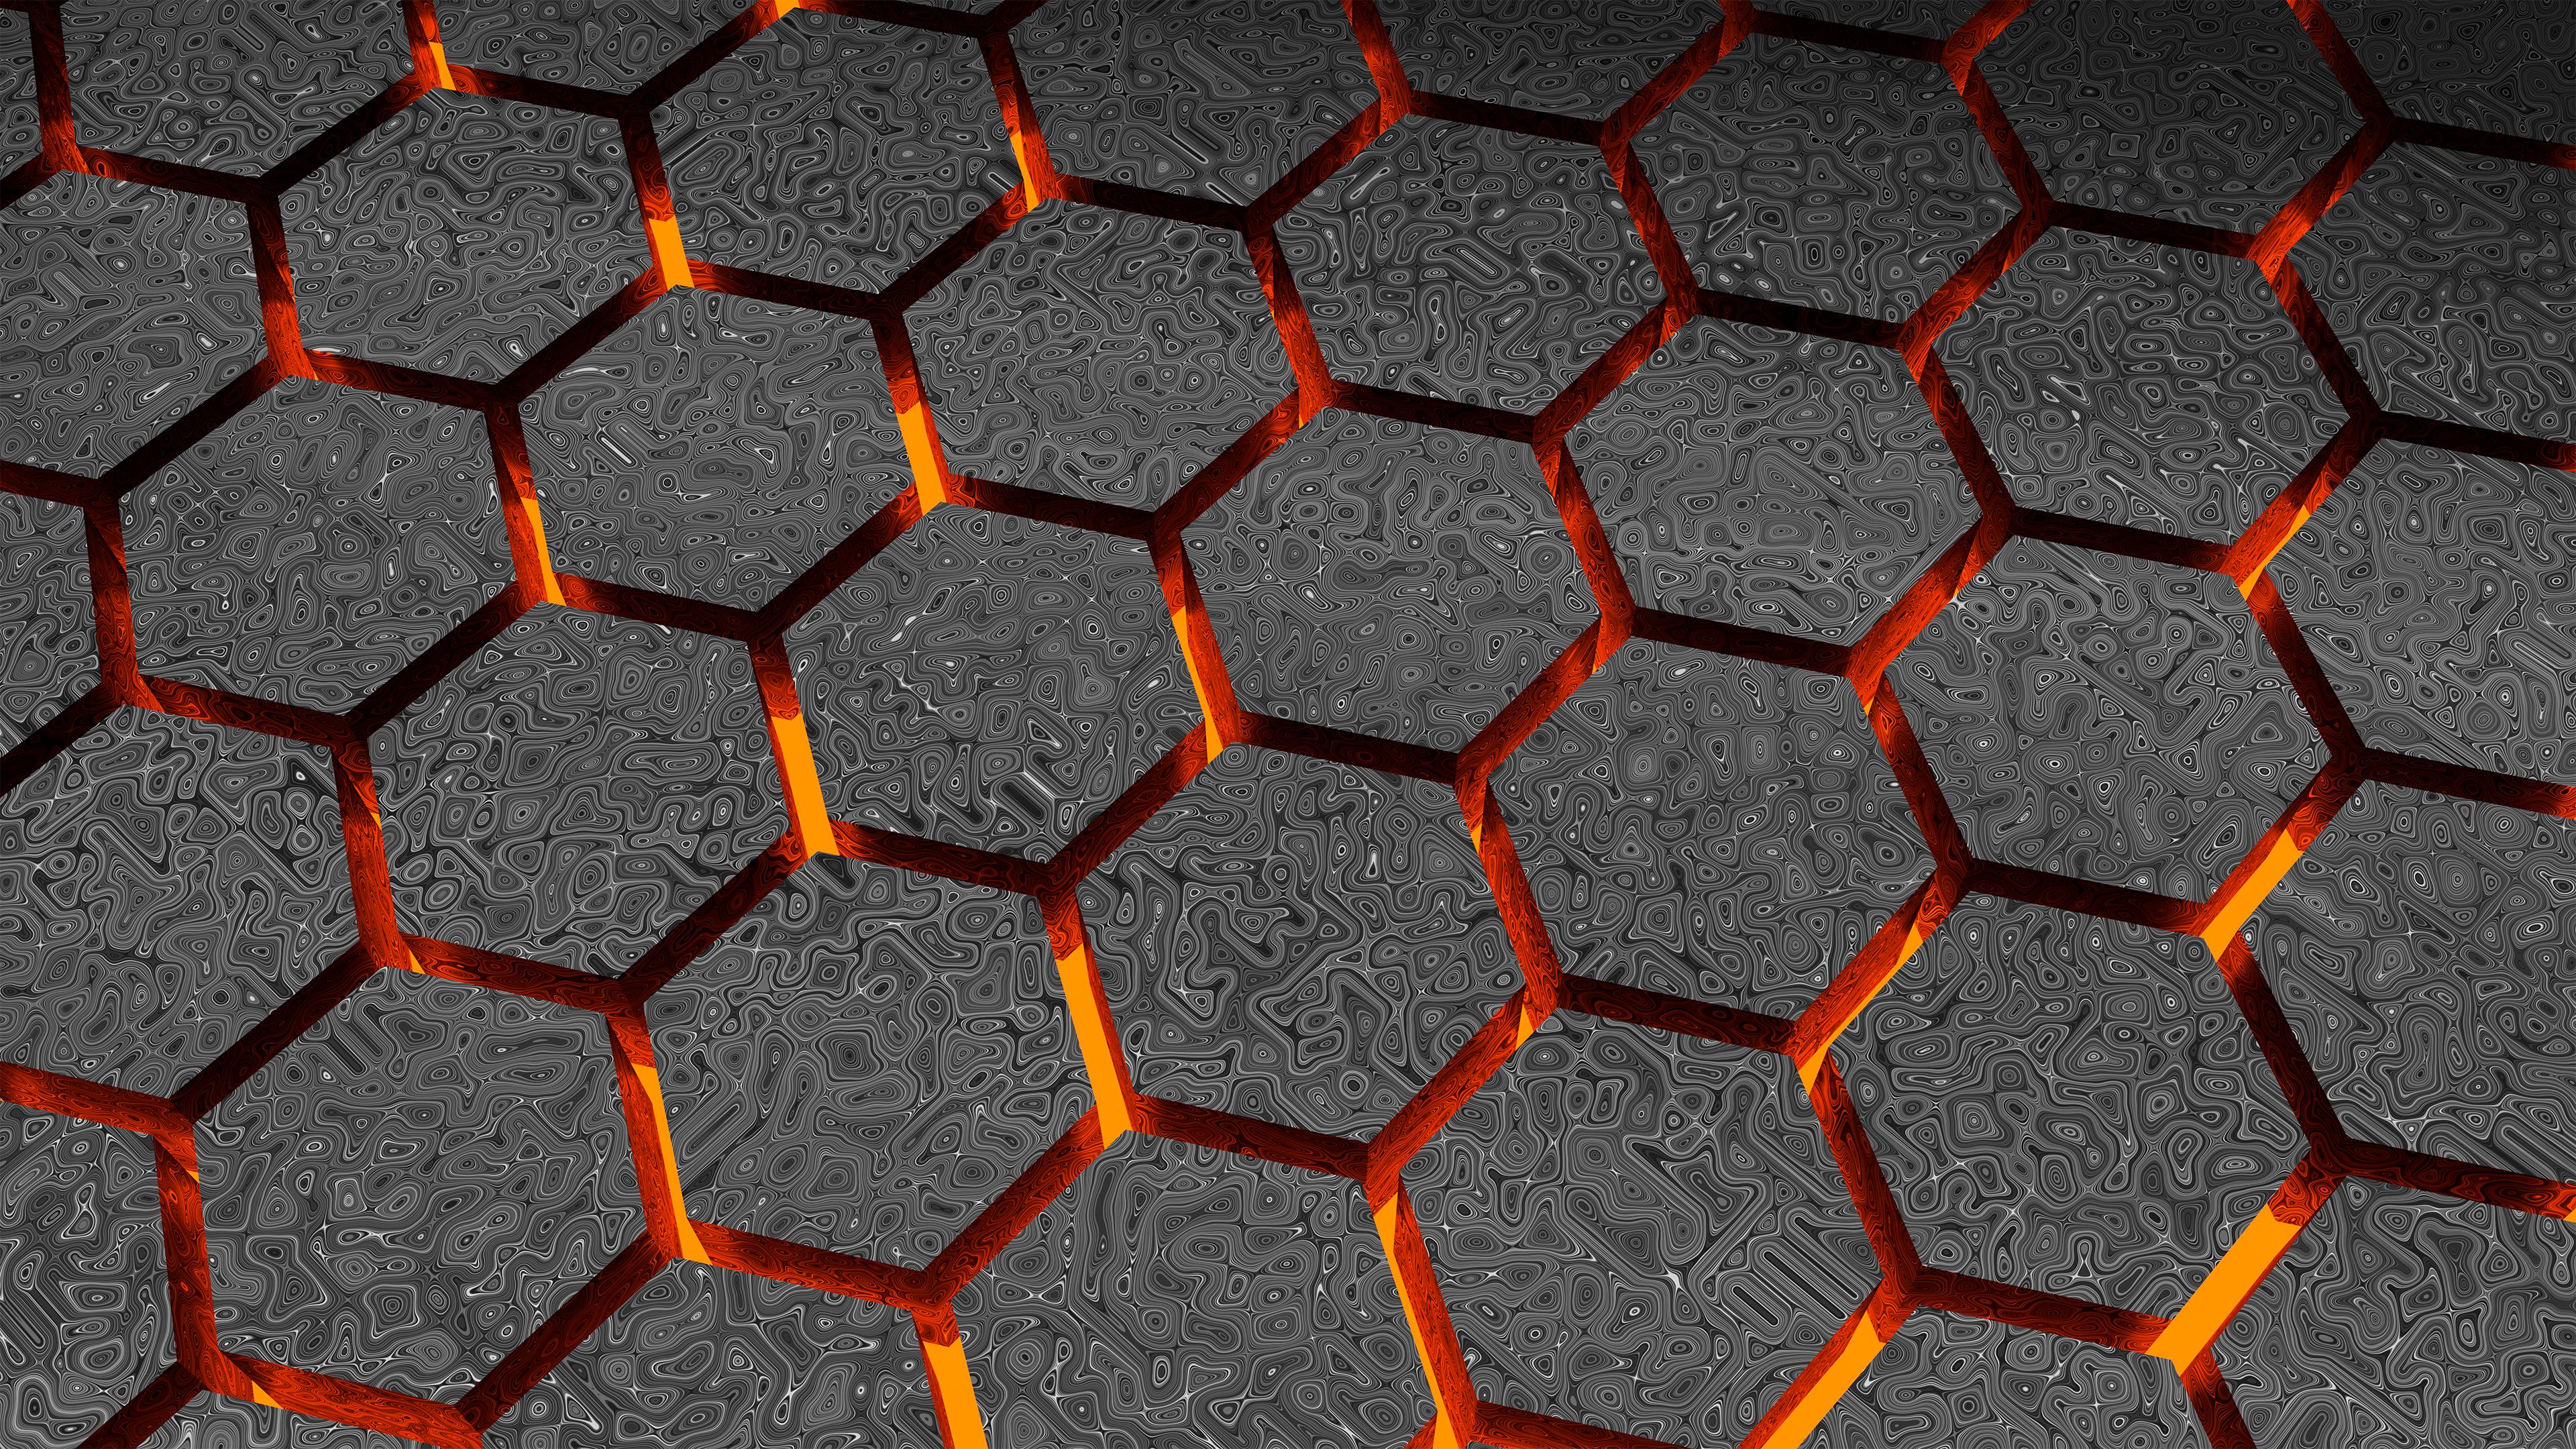 3D Hexagon Wallpapers